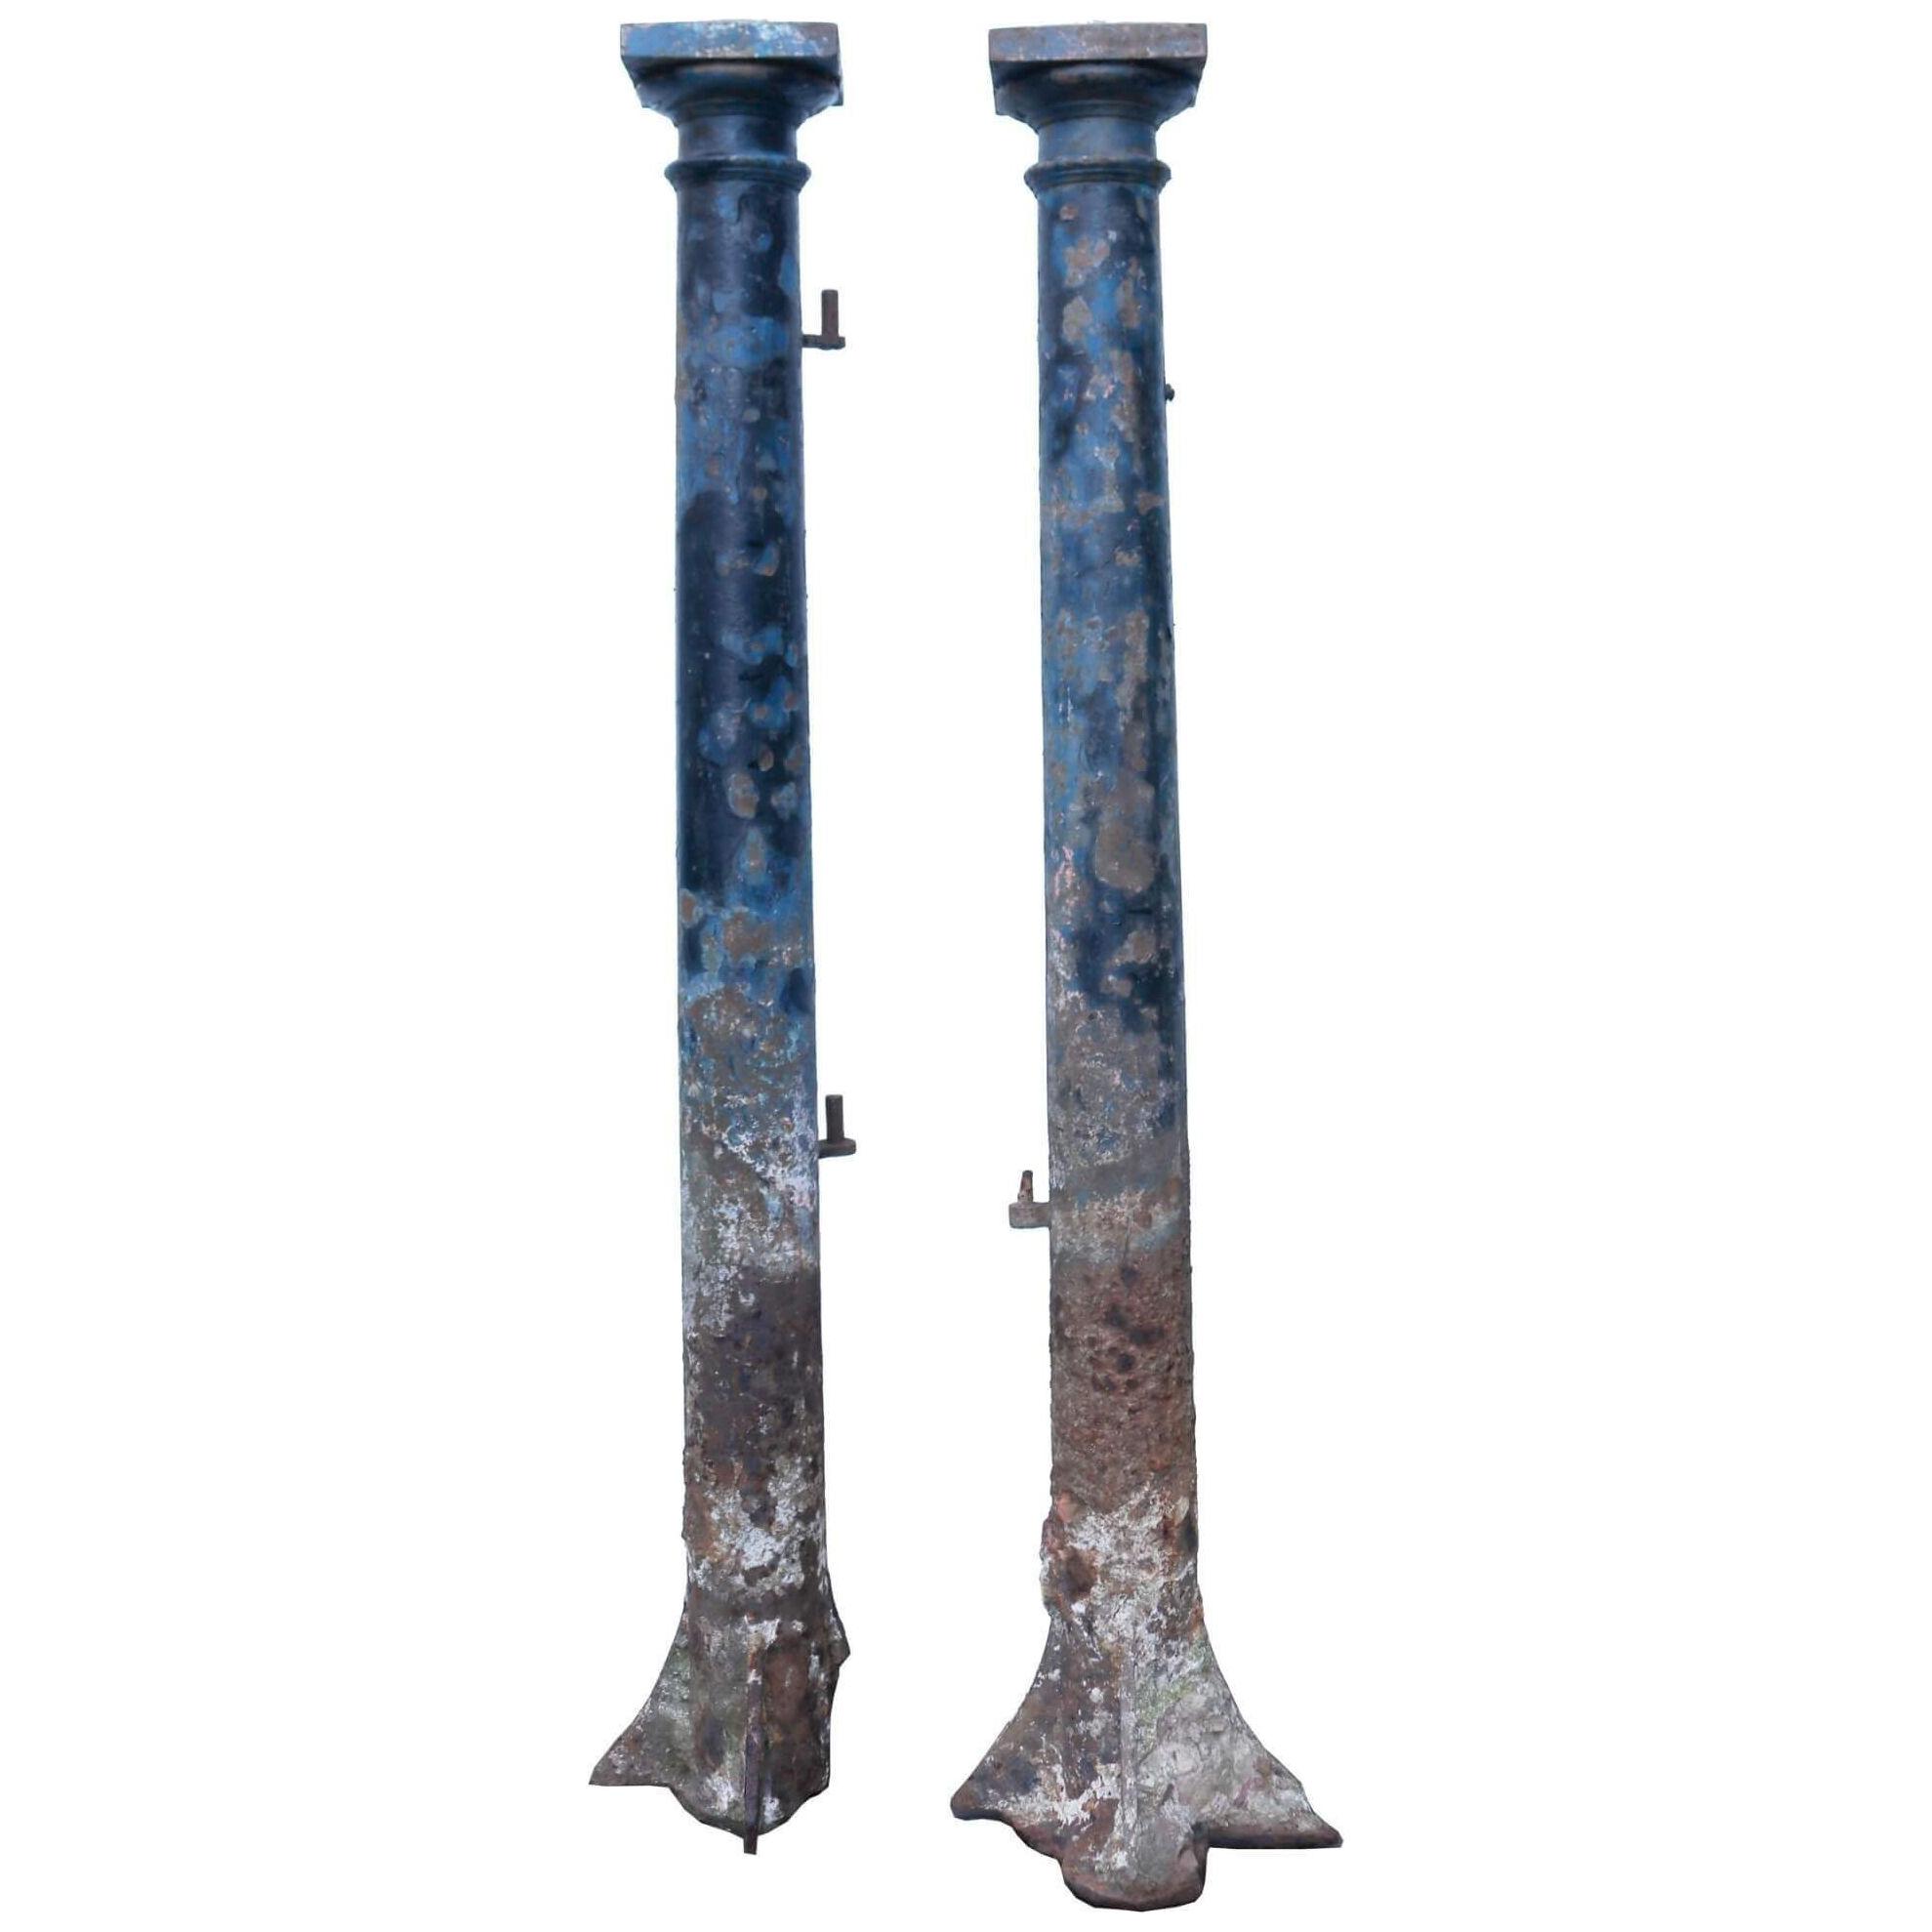 Pair of Antique Cast Iron Gate Posts